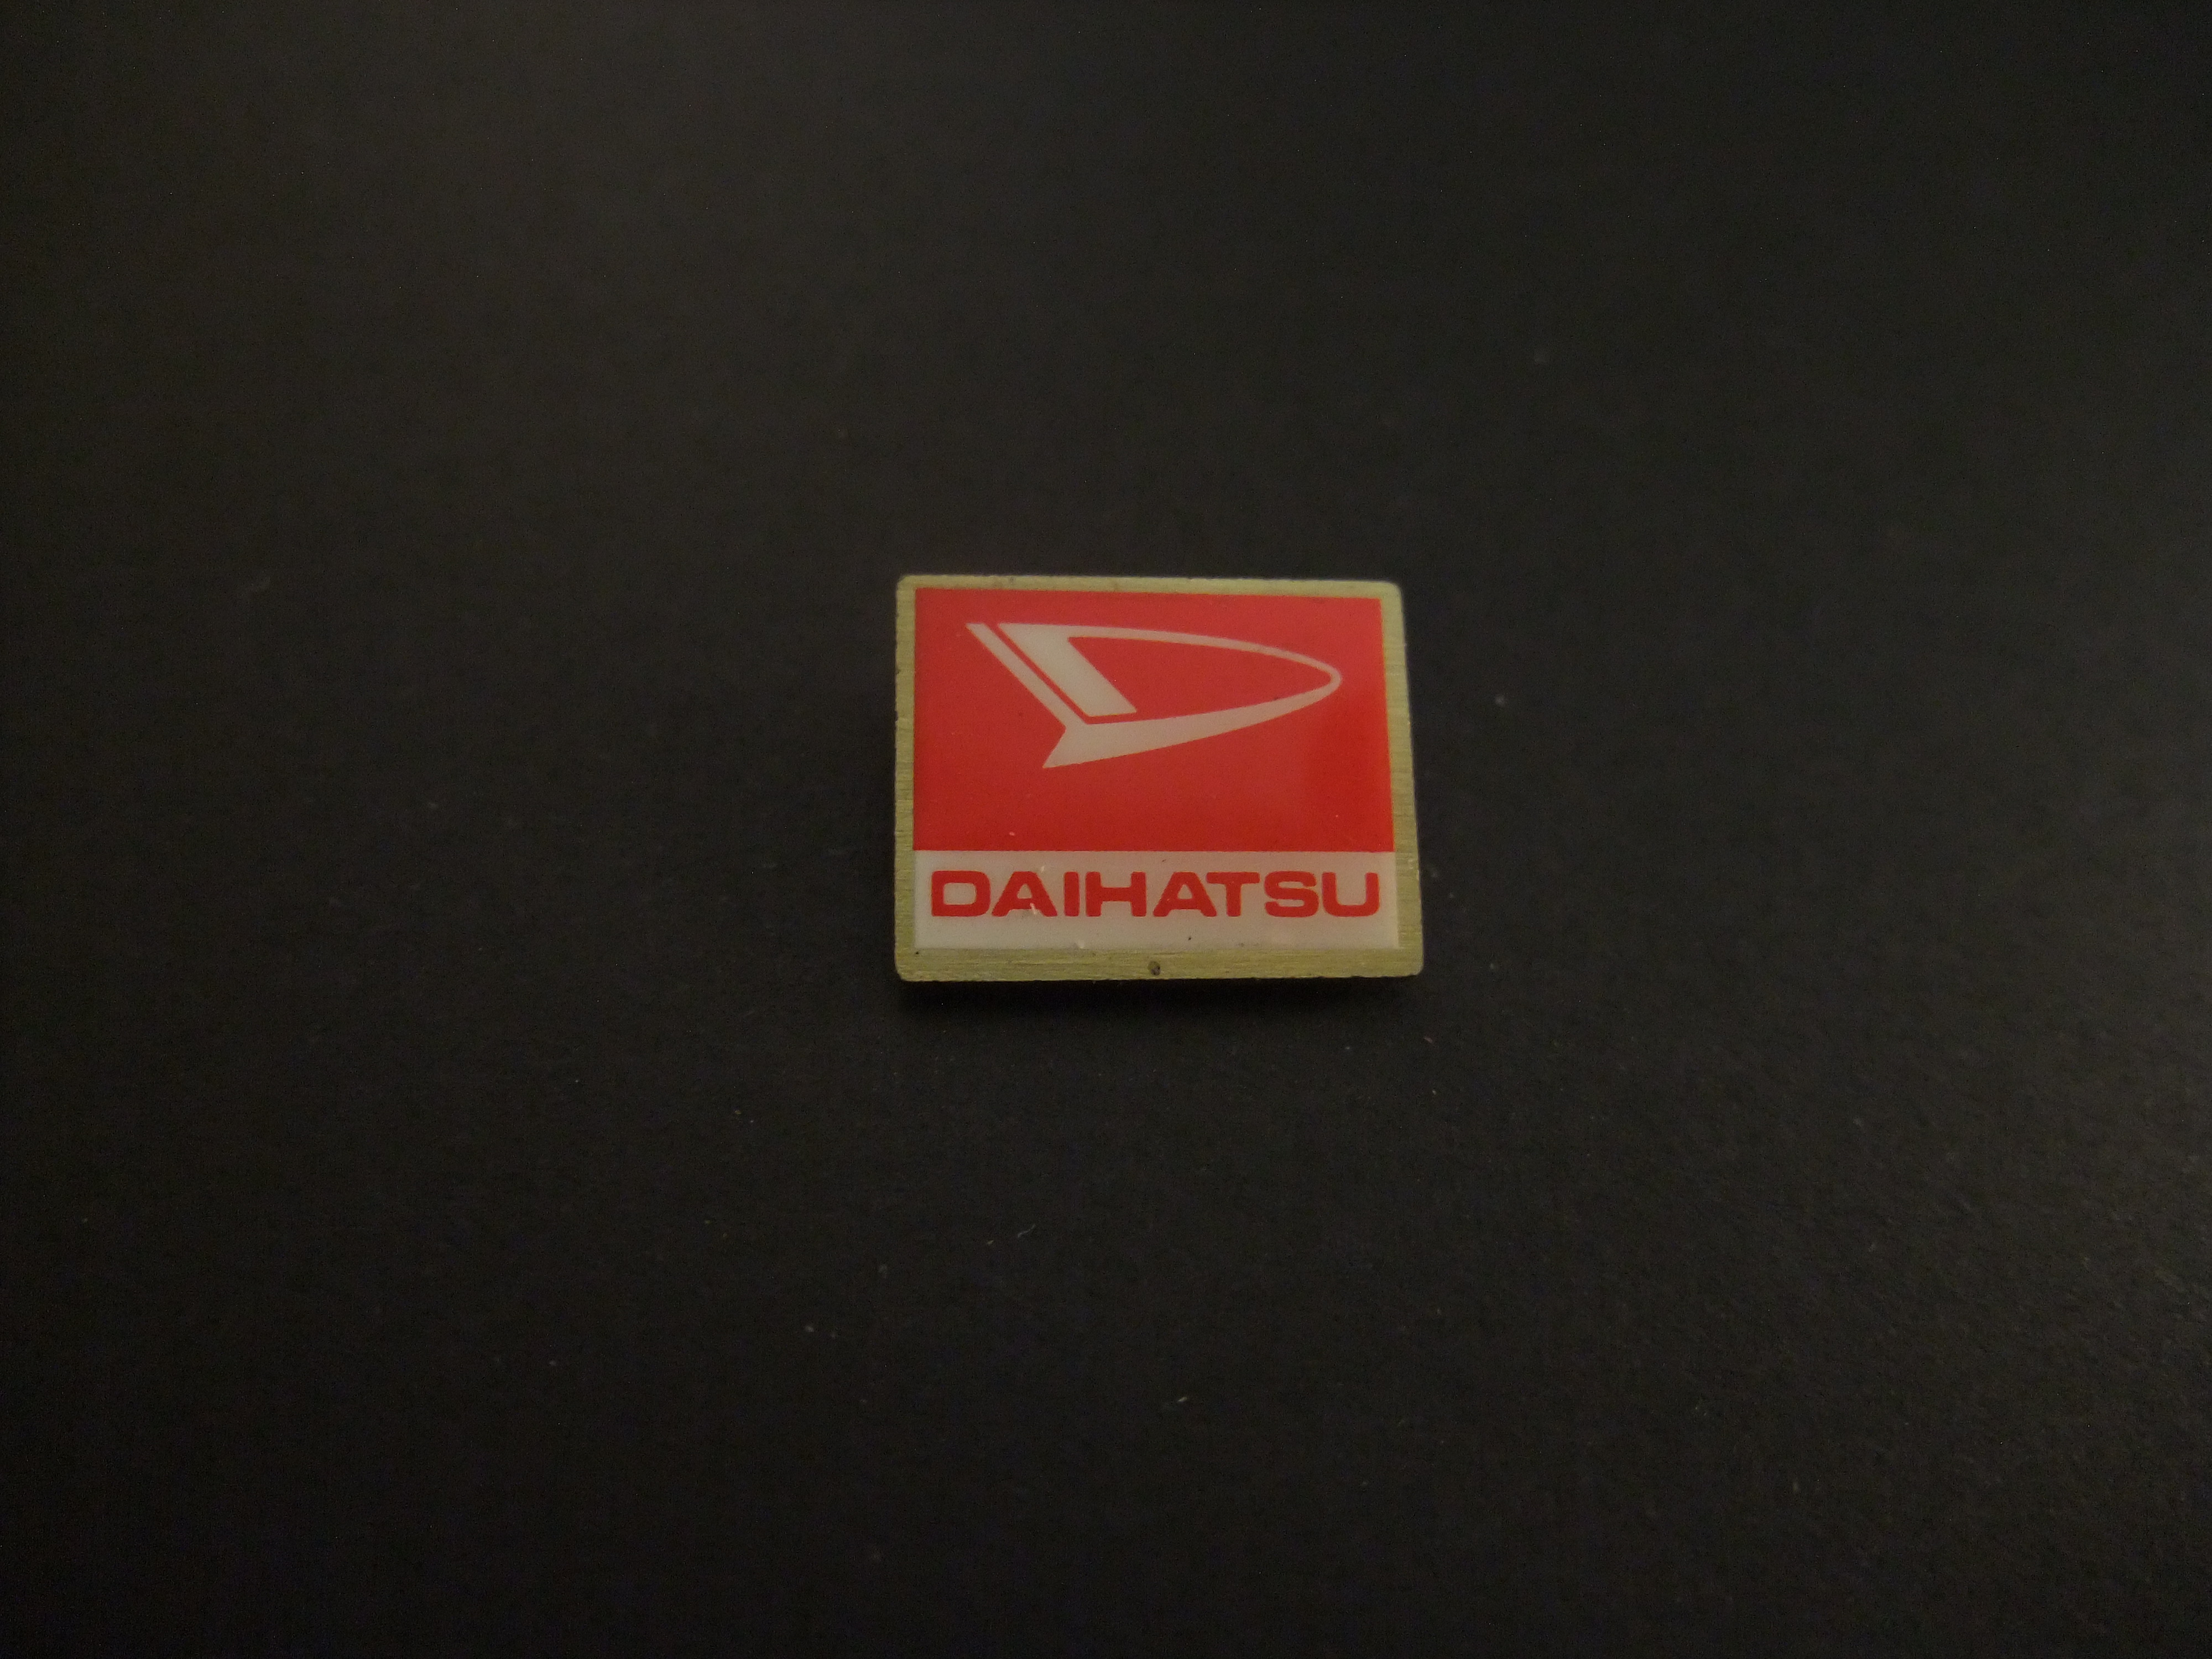 Daihatsu auto logo